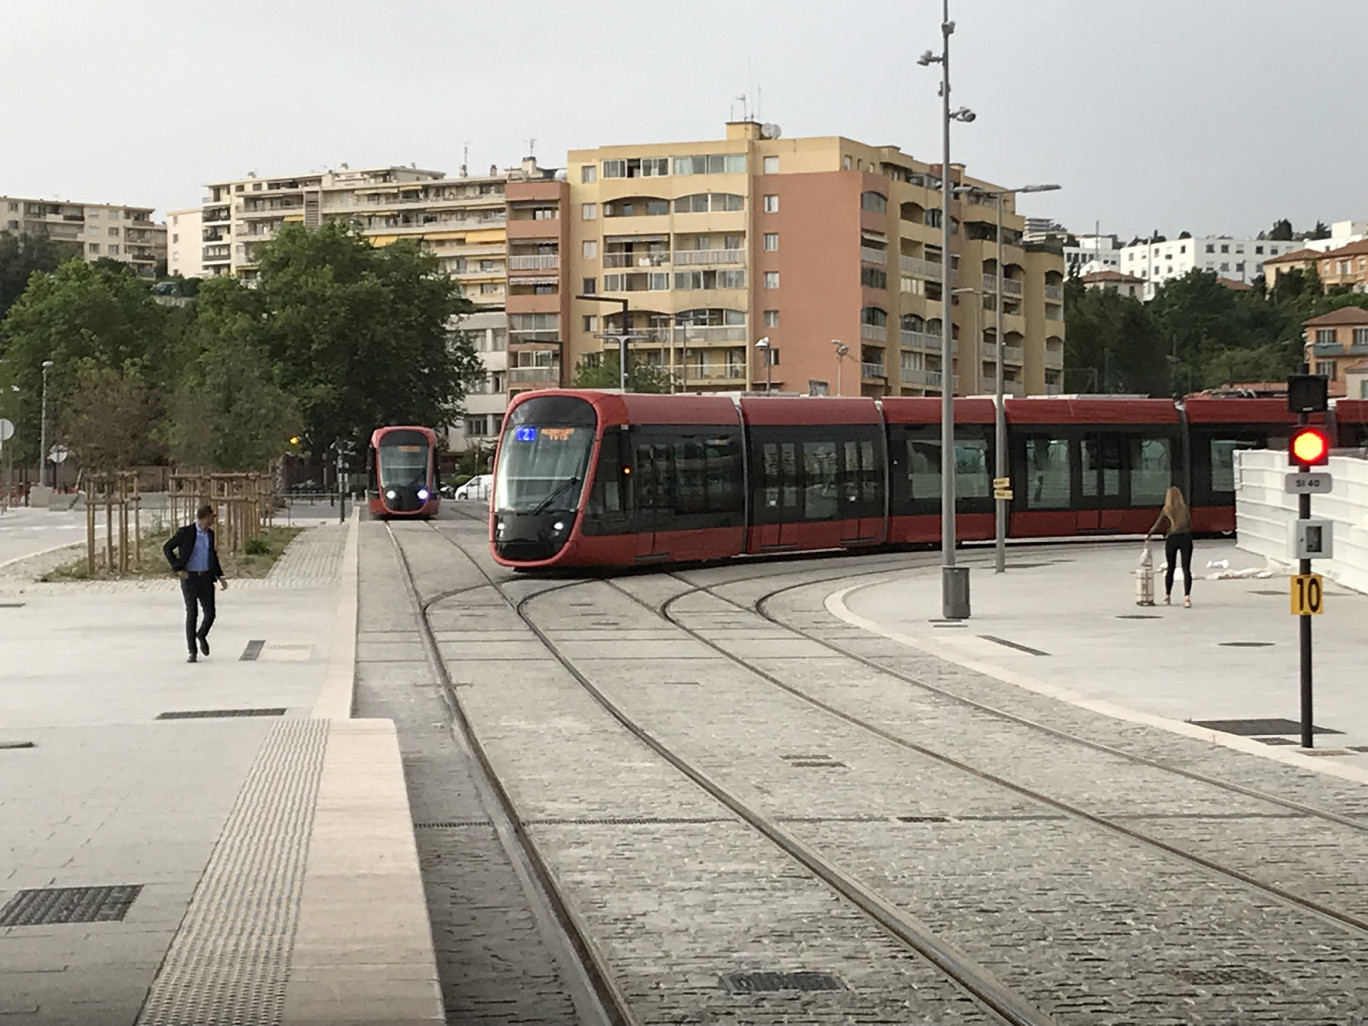 ®O.RAZEMON pour DSI
La deuxième ligne de tram à Nice, l'un des derniers à avoir été inauguré. 

